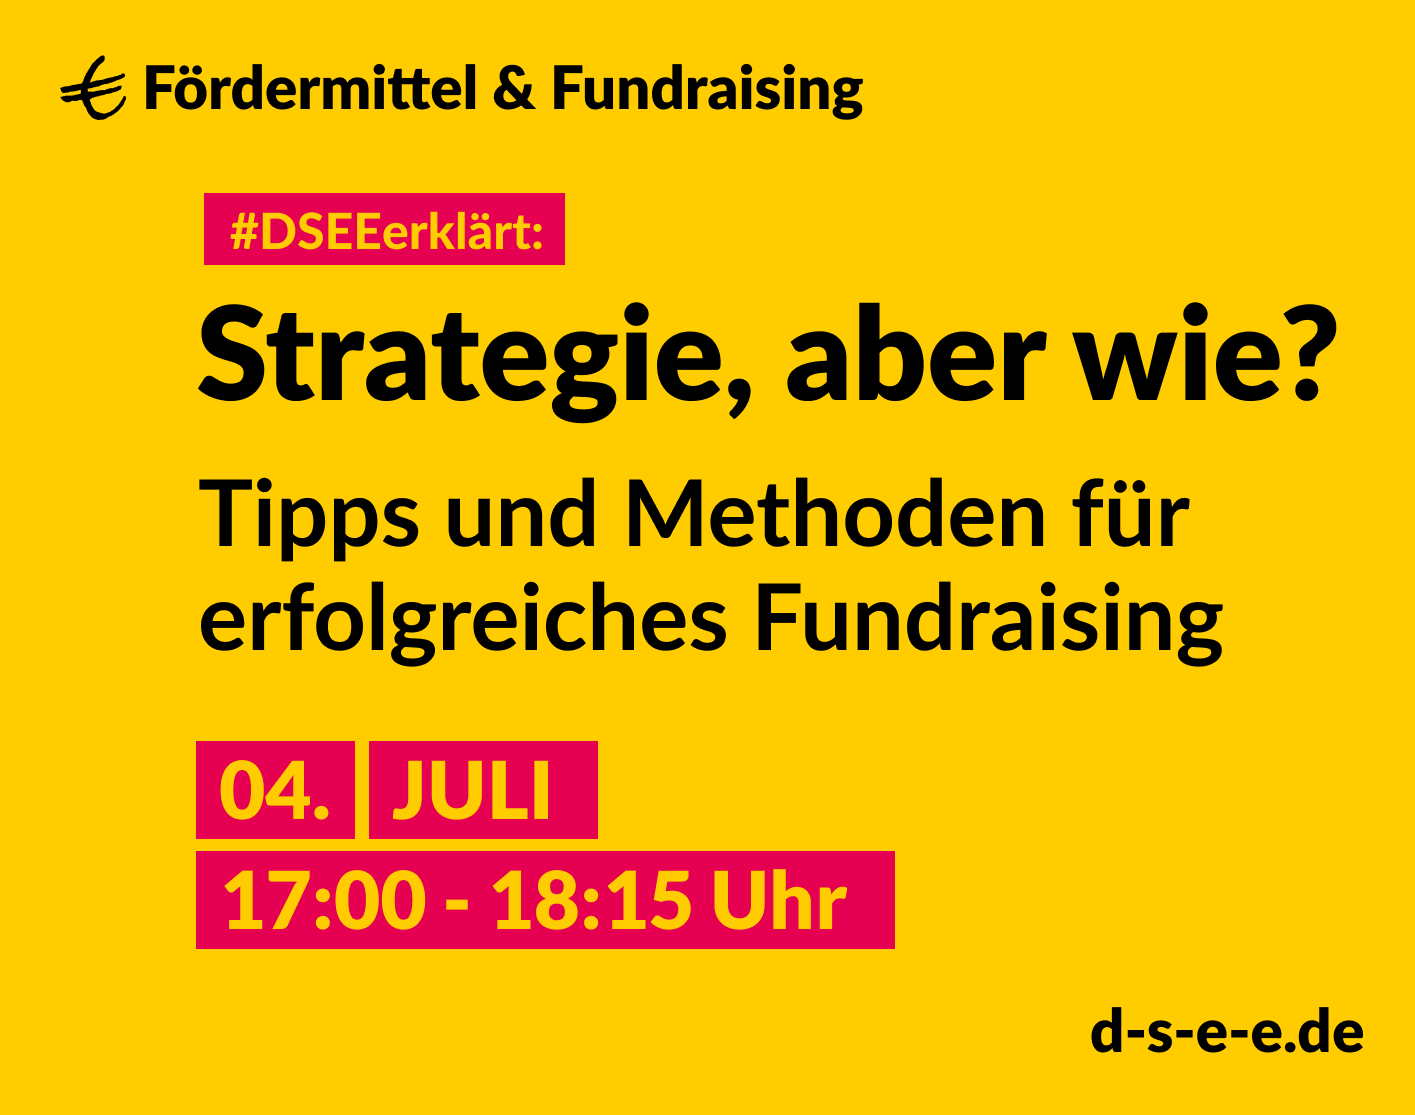 Grafik mit dem Text: DSEEerklärt Fördermittel & Fundraising. Strategie, aber wie? Tipps und Methoden für erfolgreiches Fundraising. 4. Juli, 17:00 – 18:15 Uhr. d-s-e-e.de